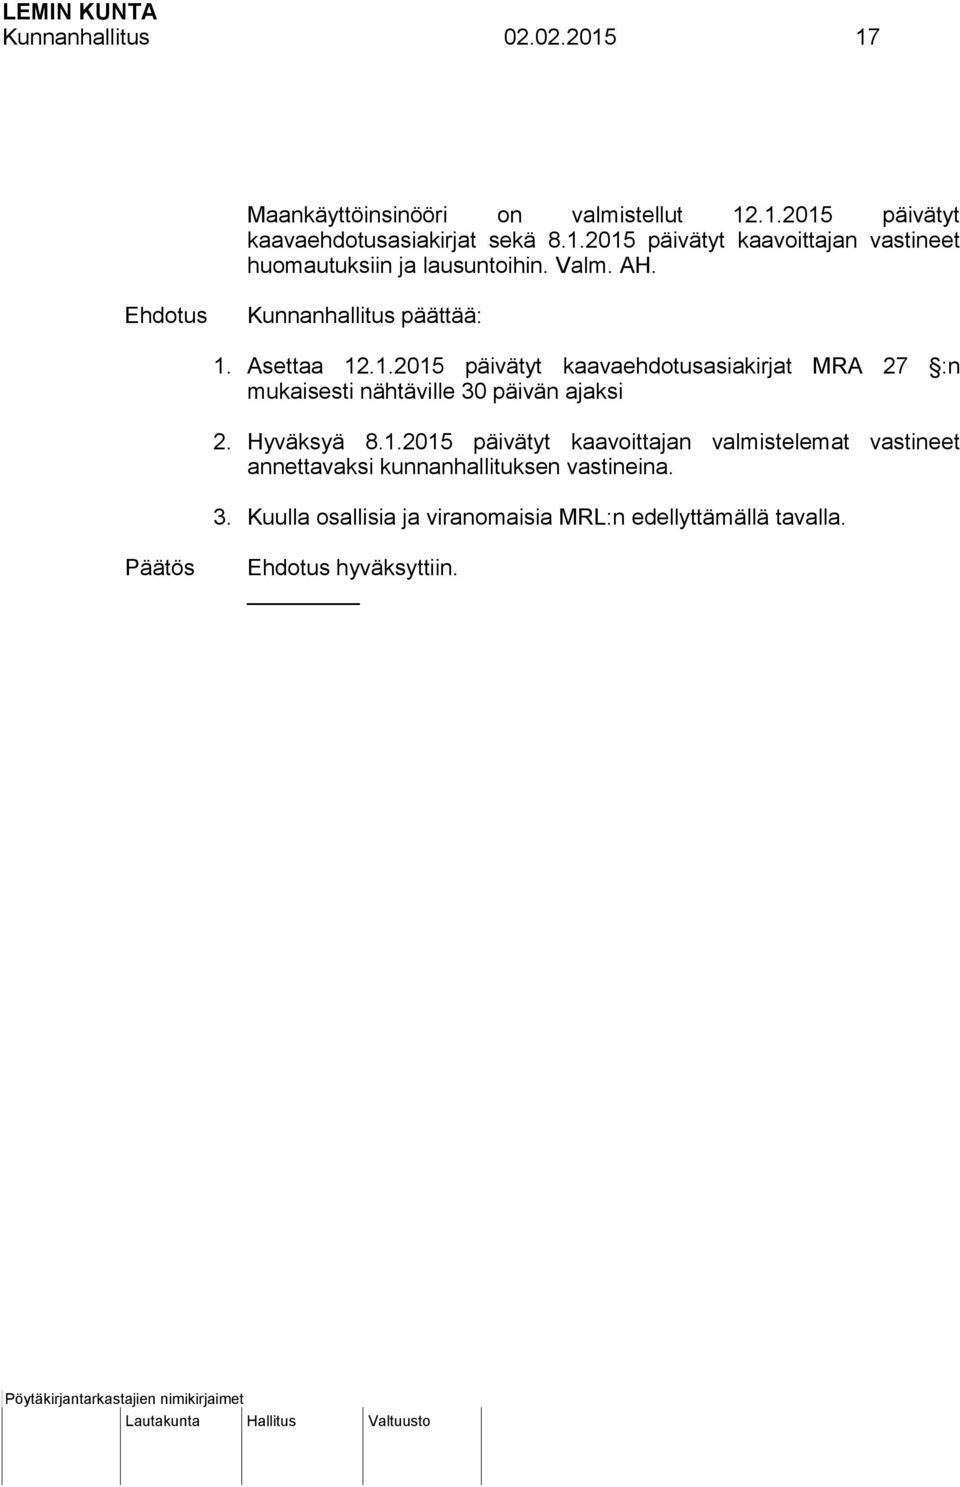 Hyväksyä 8.1.2015 päivätyt kaavoittajan valmistelemat vastineet annettavaksi kunnanhallituksen vastineina. 3.